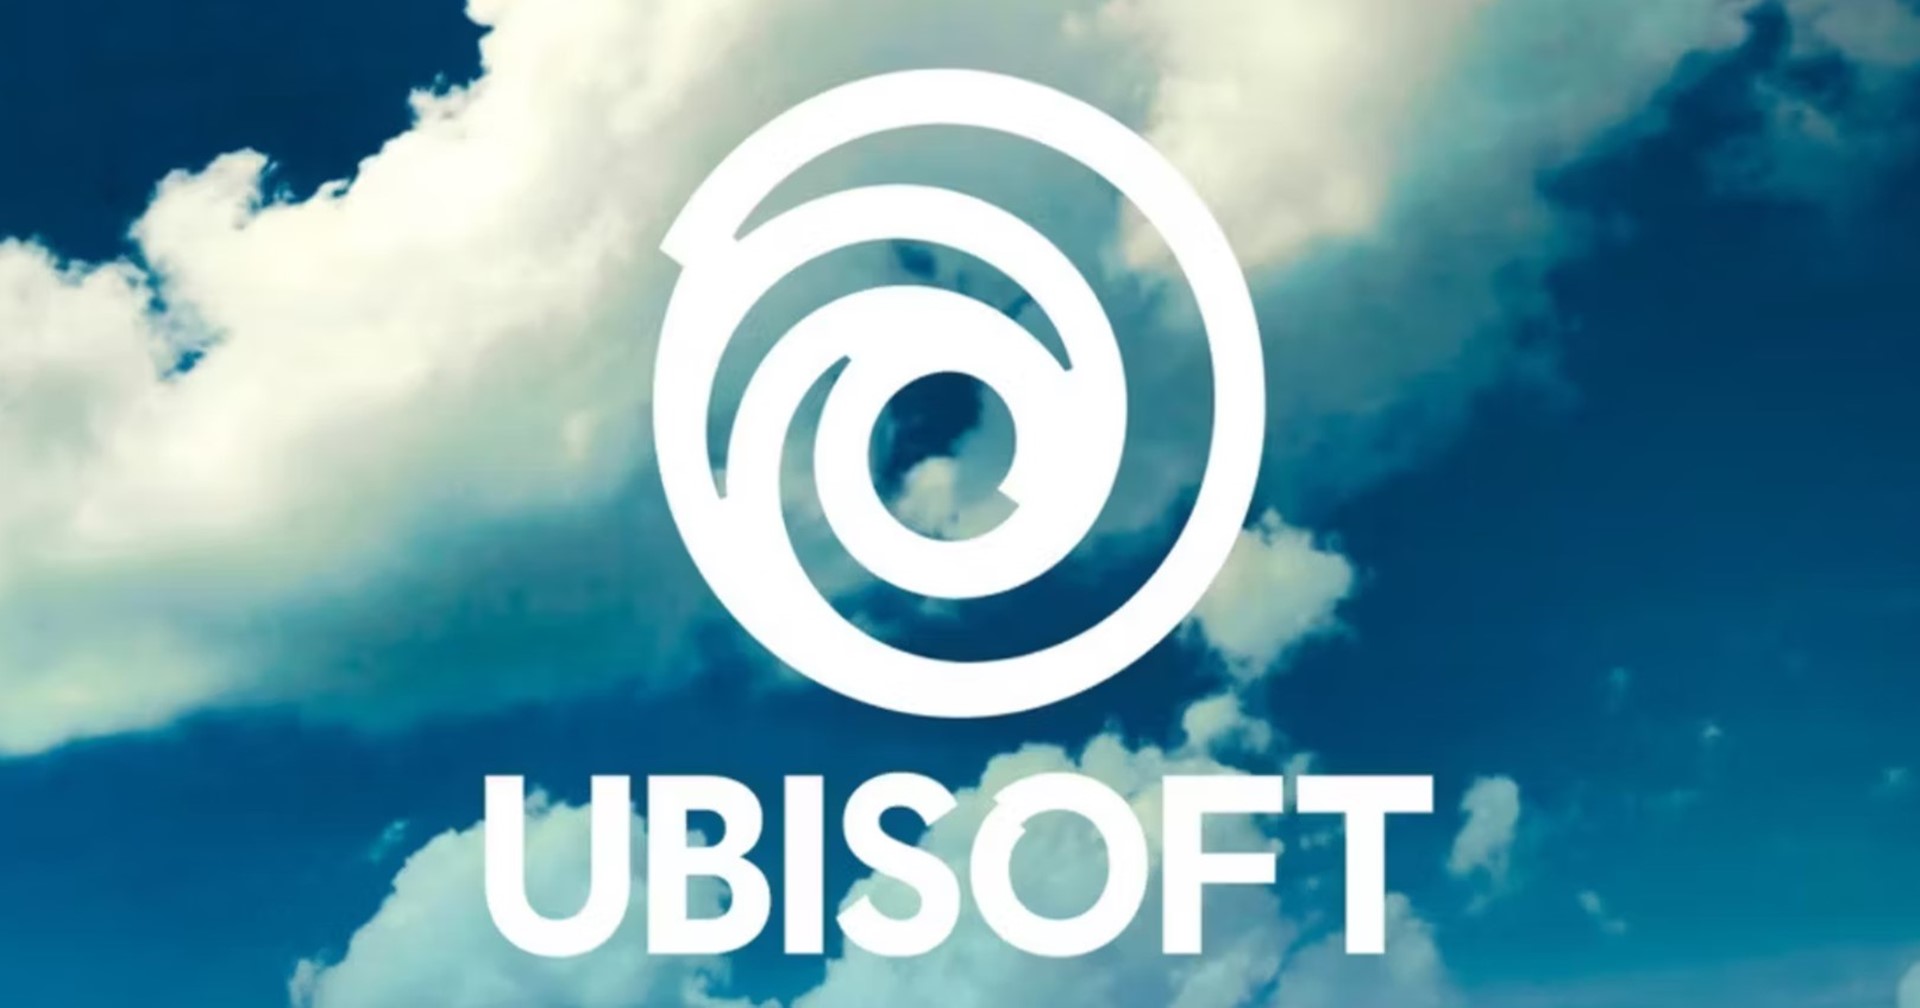 พนักงาน Ubisoft ในฝรั่งเศสประท้วงหยุดงาน